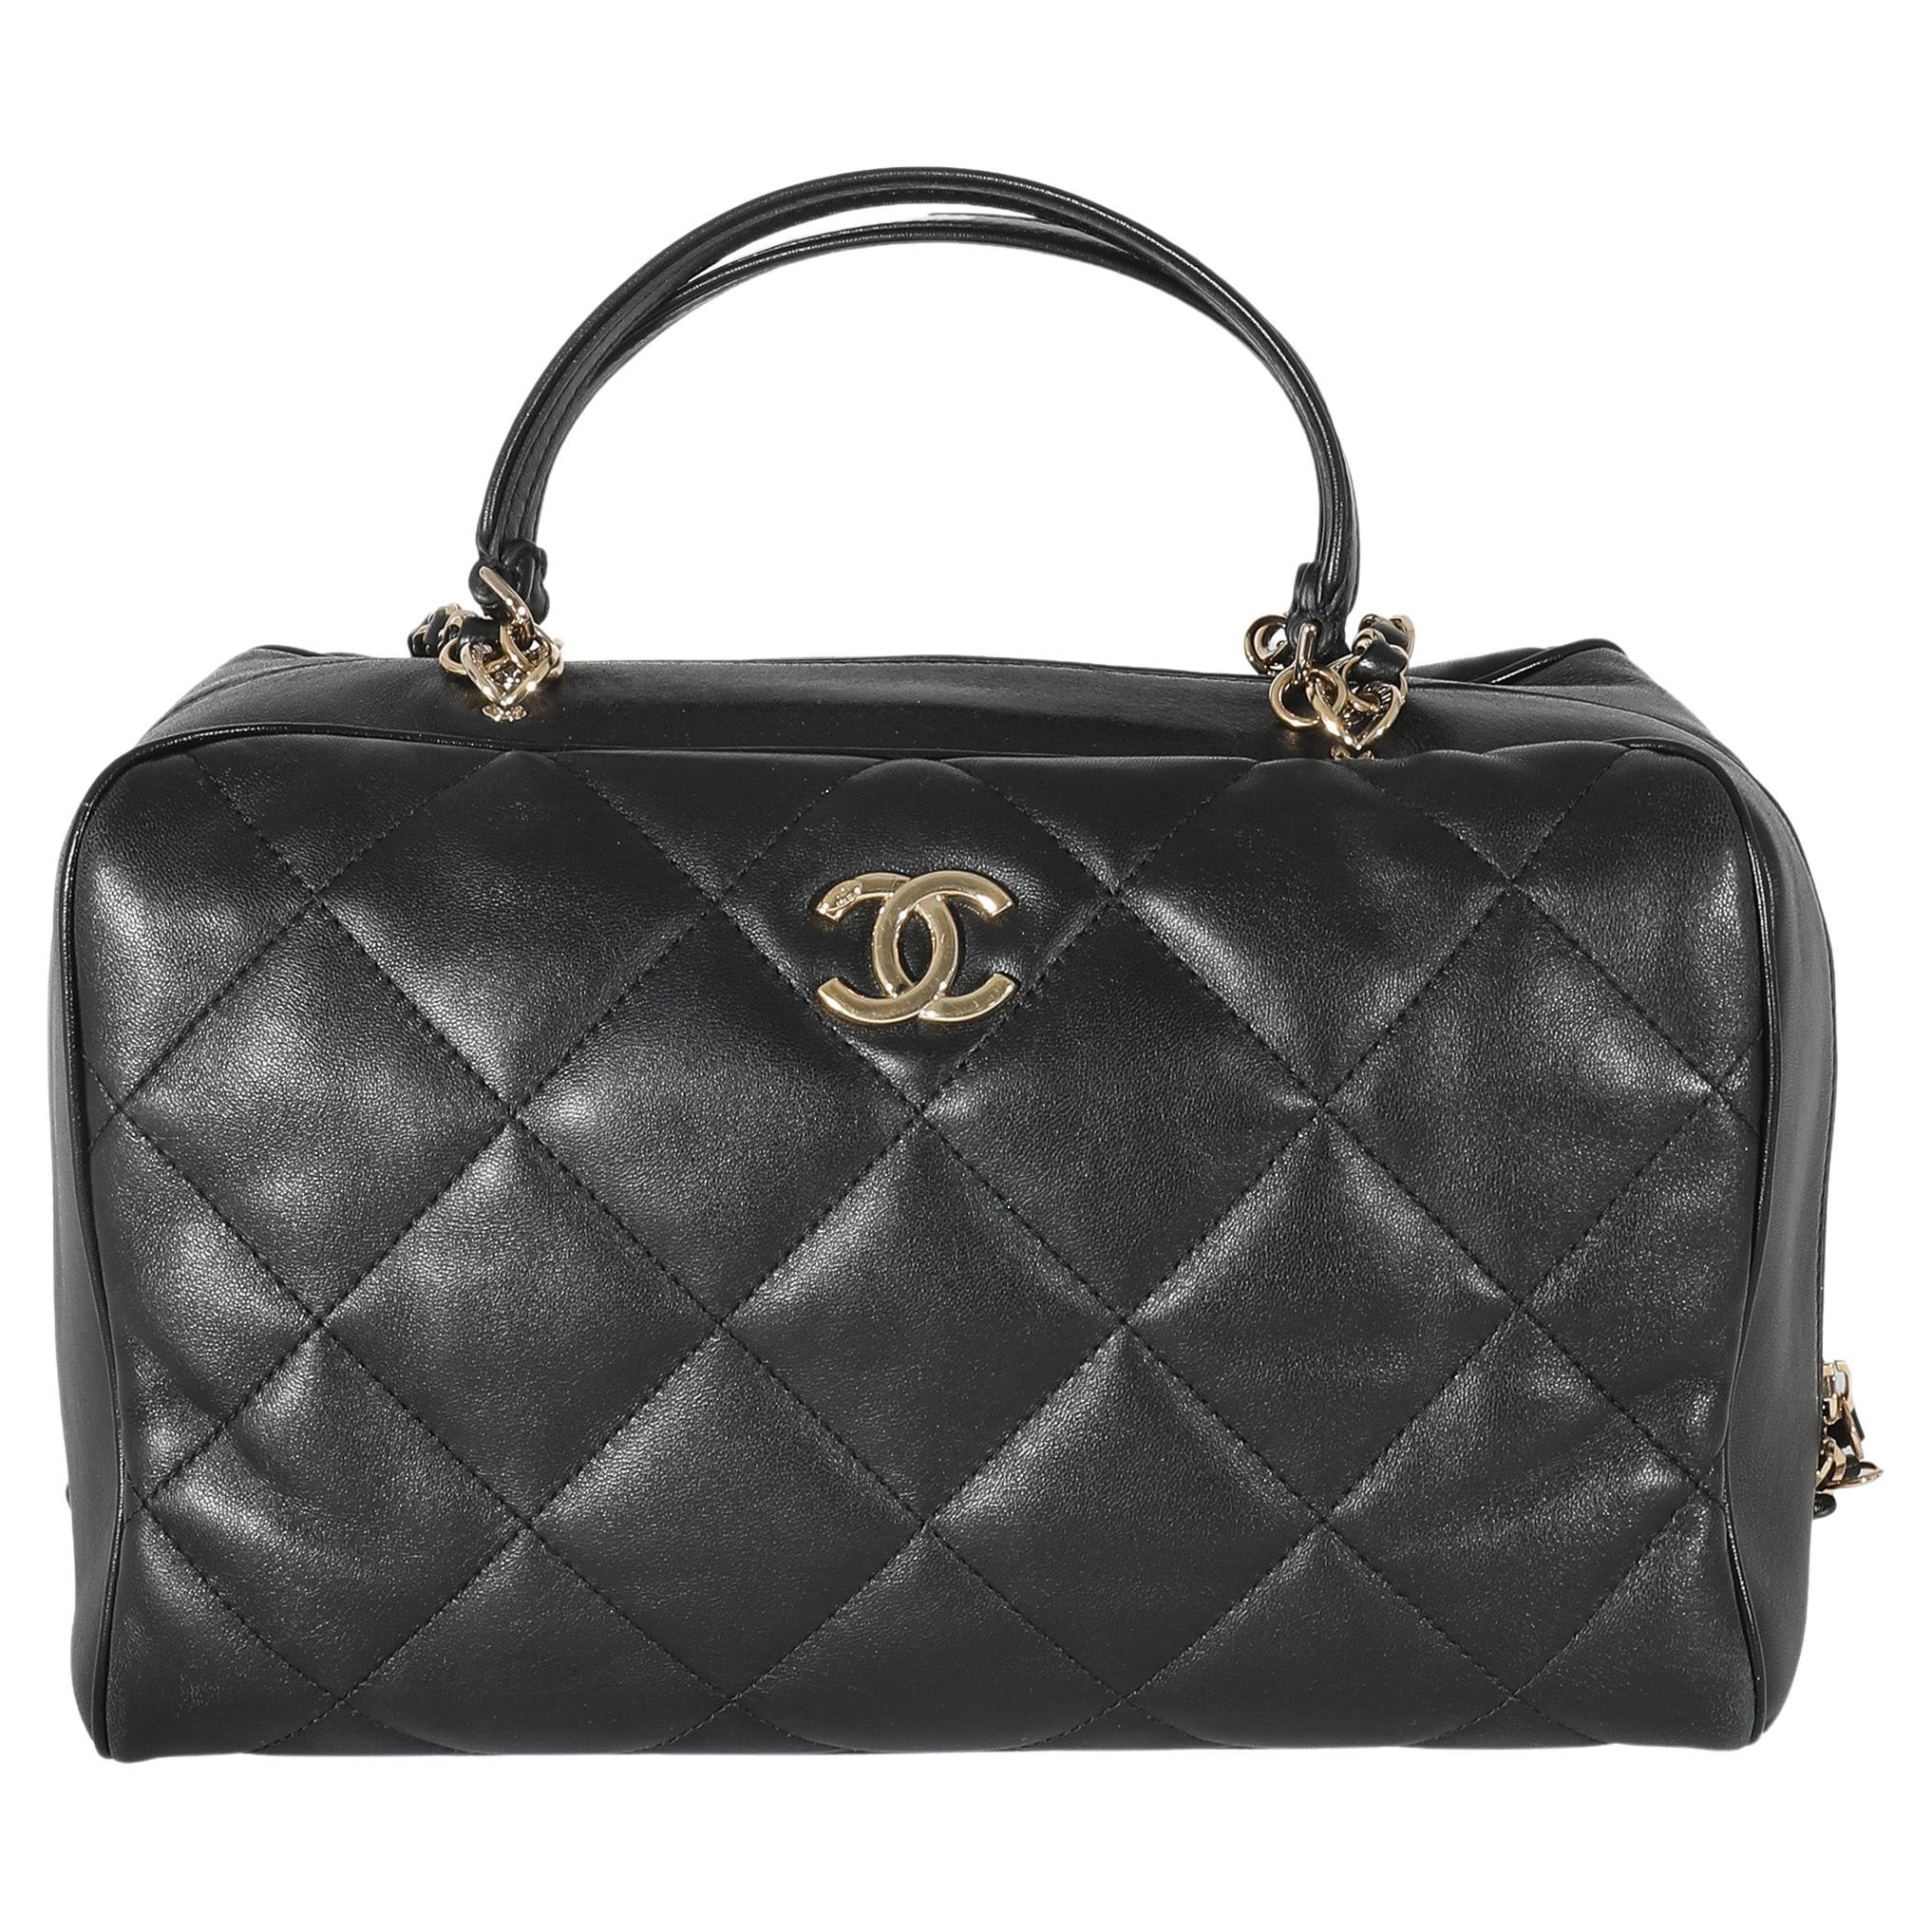 Chanel Cc Bag Top Handle - 221 For Sale on 1stDibs